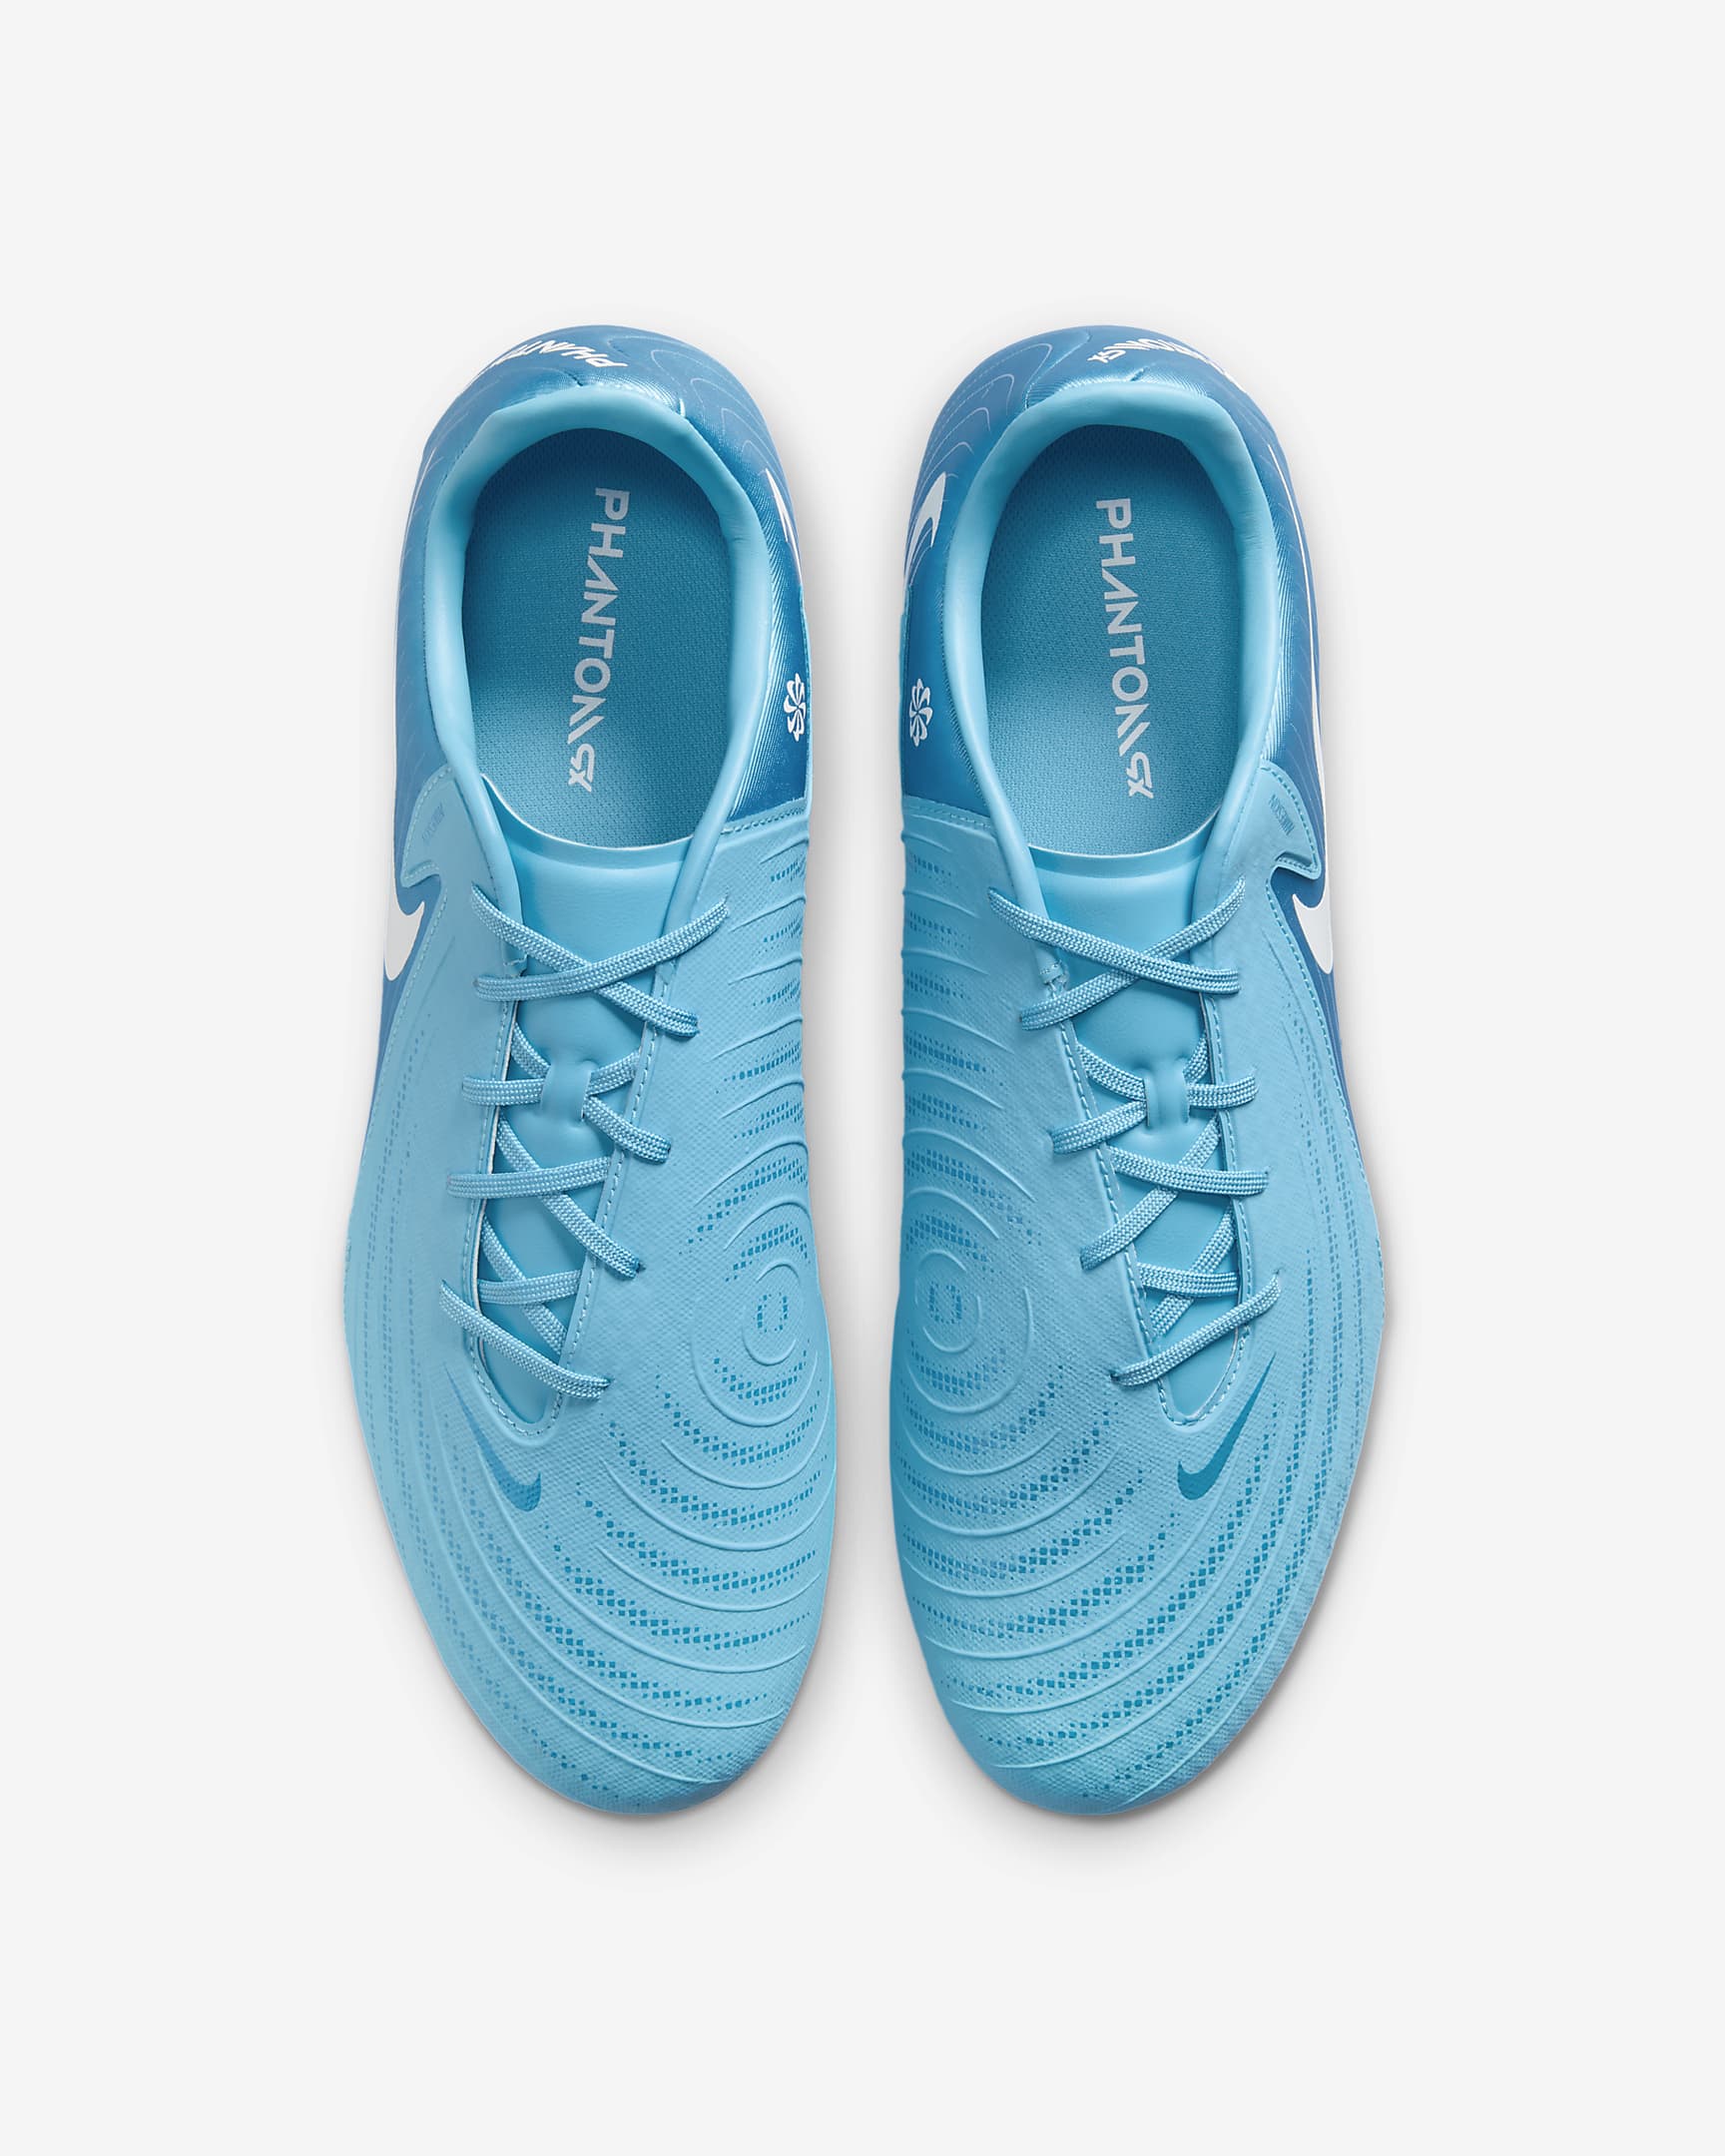 Nike Phantom GX 2 Academy SG Low-Top Football Boot - Blue Fury/White